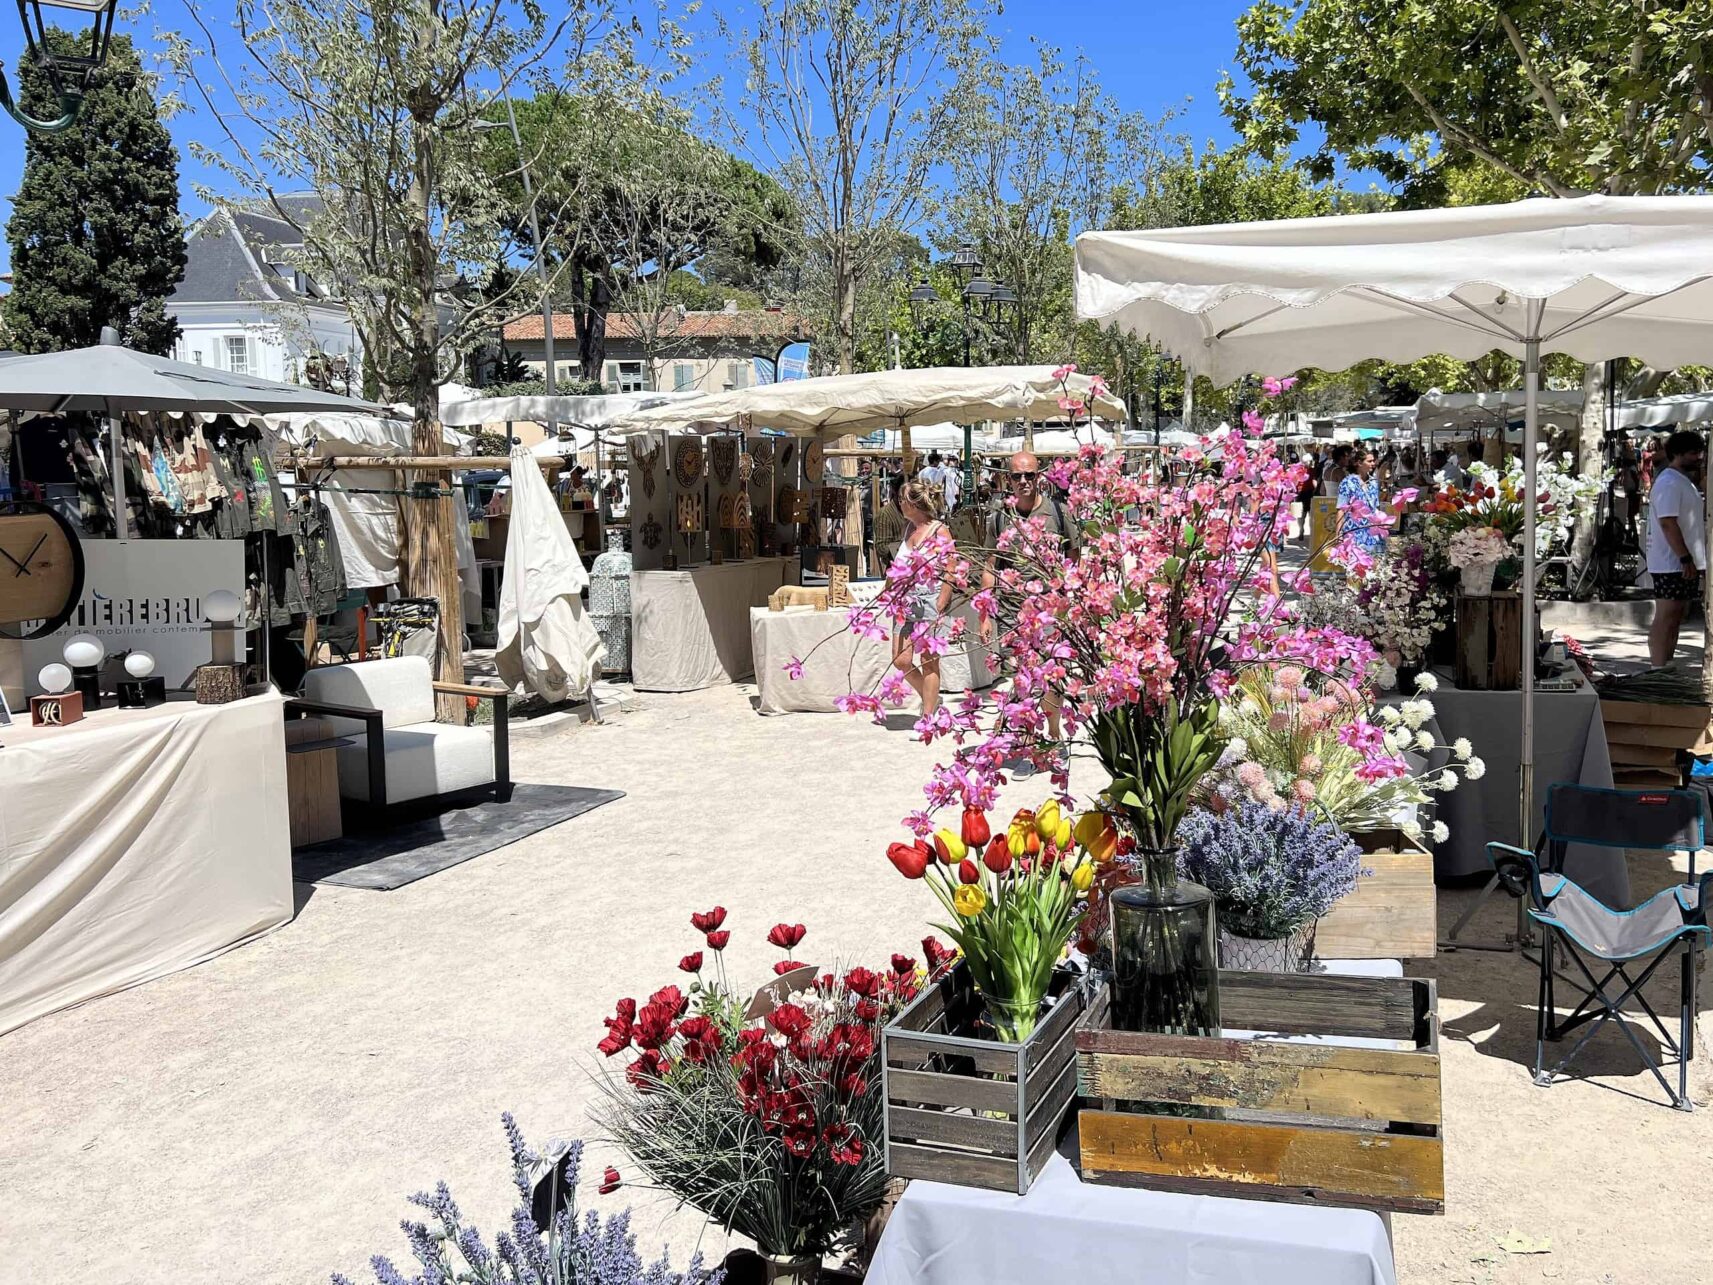 Markt am Mittwoch in St. Tropez an der Cote d Azur in Frankreich.